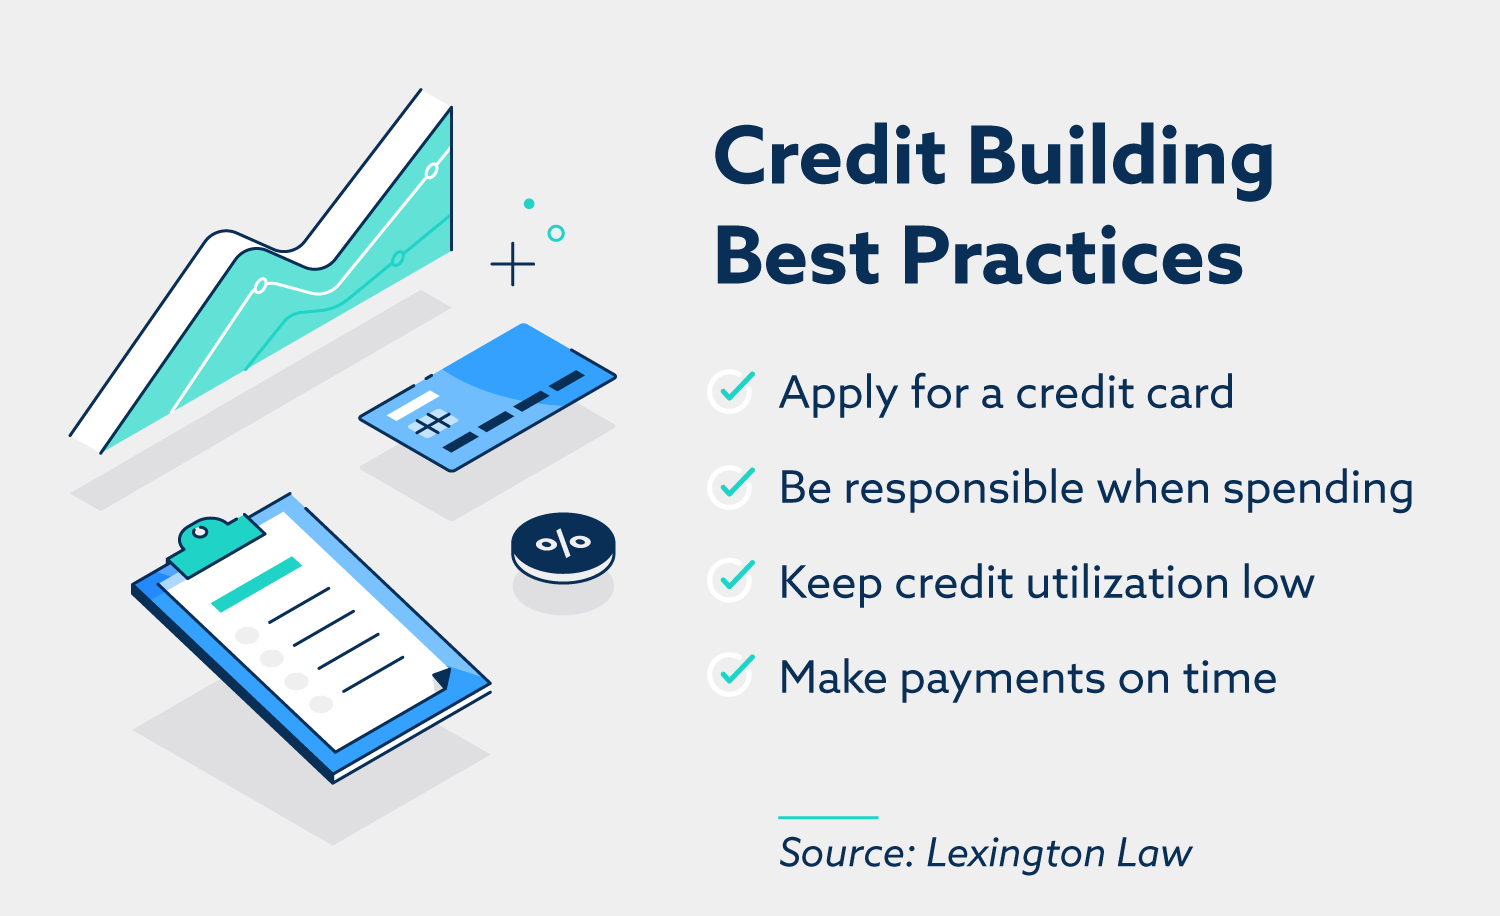 Mejores prácticas de creación de crédito: solicite una tarjeta de crédito, sea responsable al gastar, mantenga baja la utilización del crédito, realice pagos a tiempo.